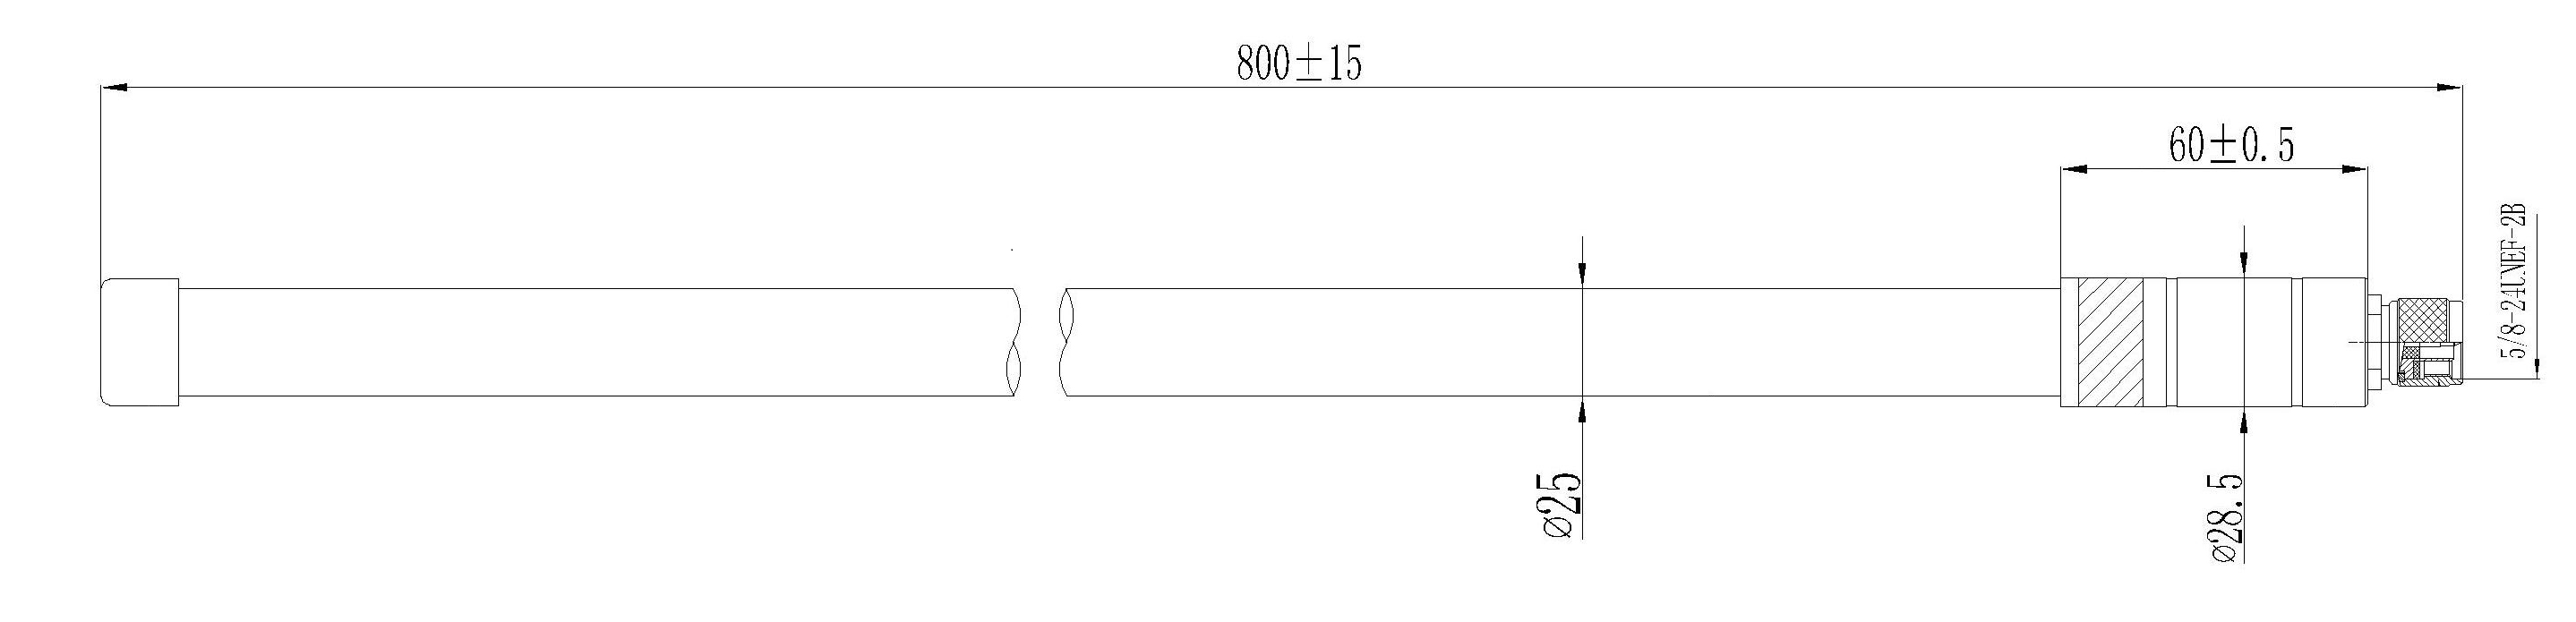 Antena de Fibra de Vidrio LoRa Tipo N - 5.8 dBi (863-870 MHz) - Haga Clic para Ampliar